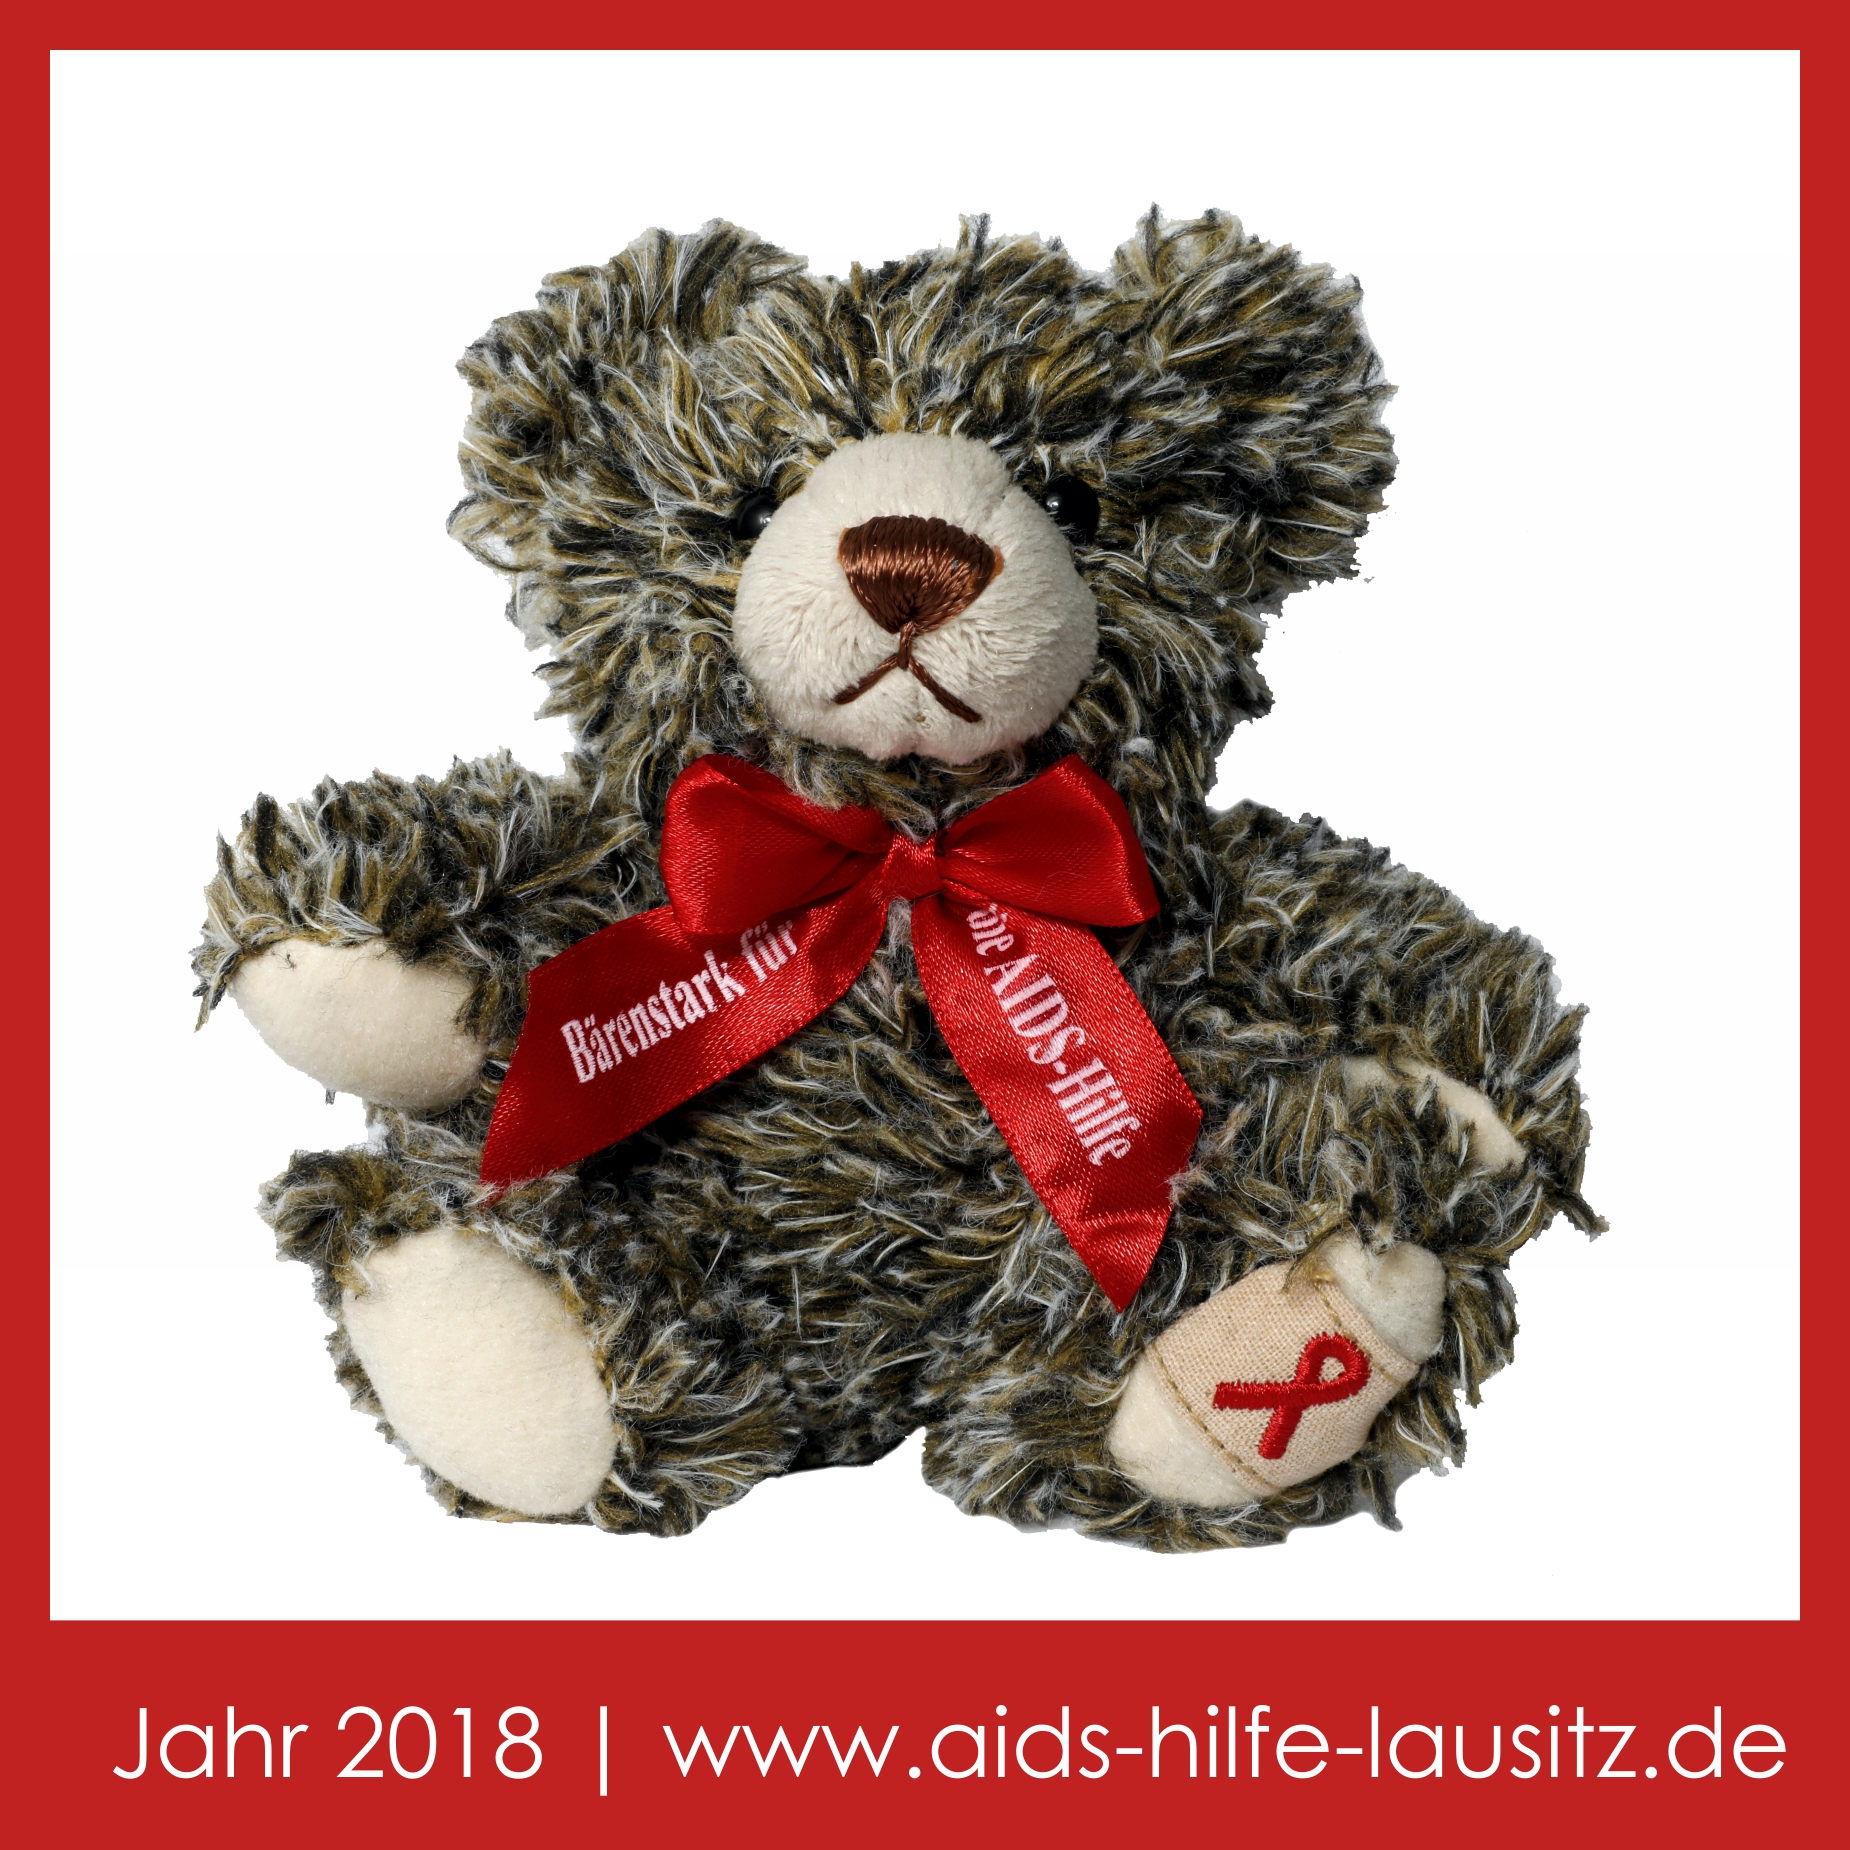 Teddy 2018 | Bärenstark für die AIDS-Hilfe